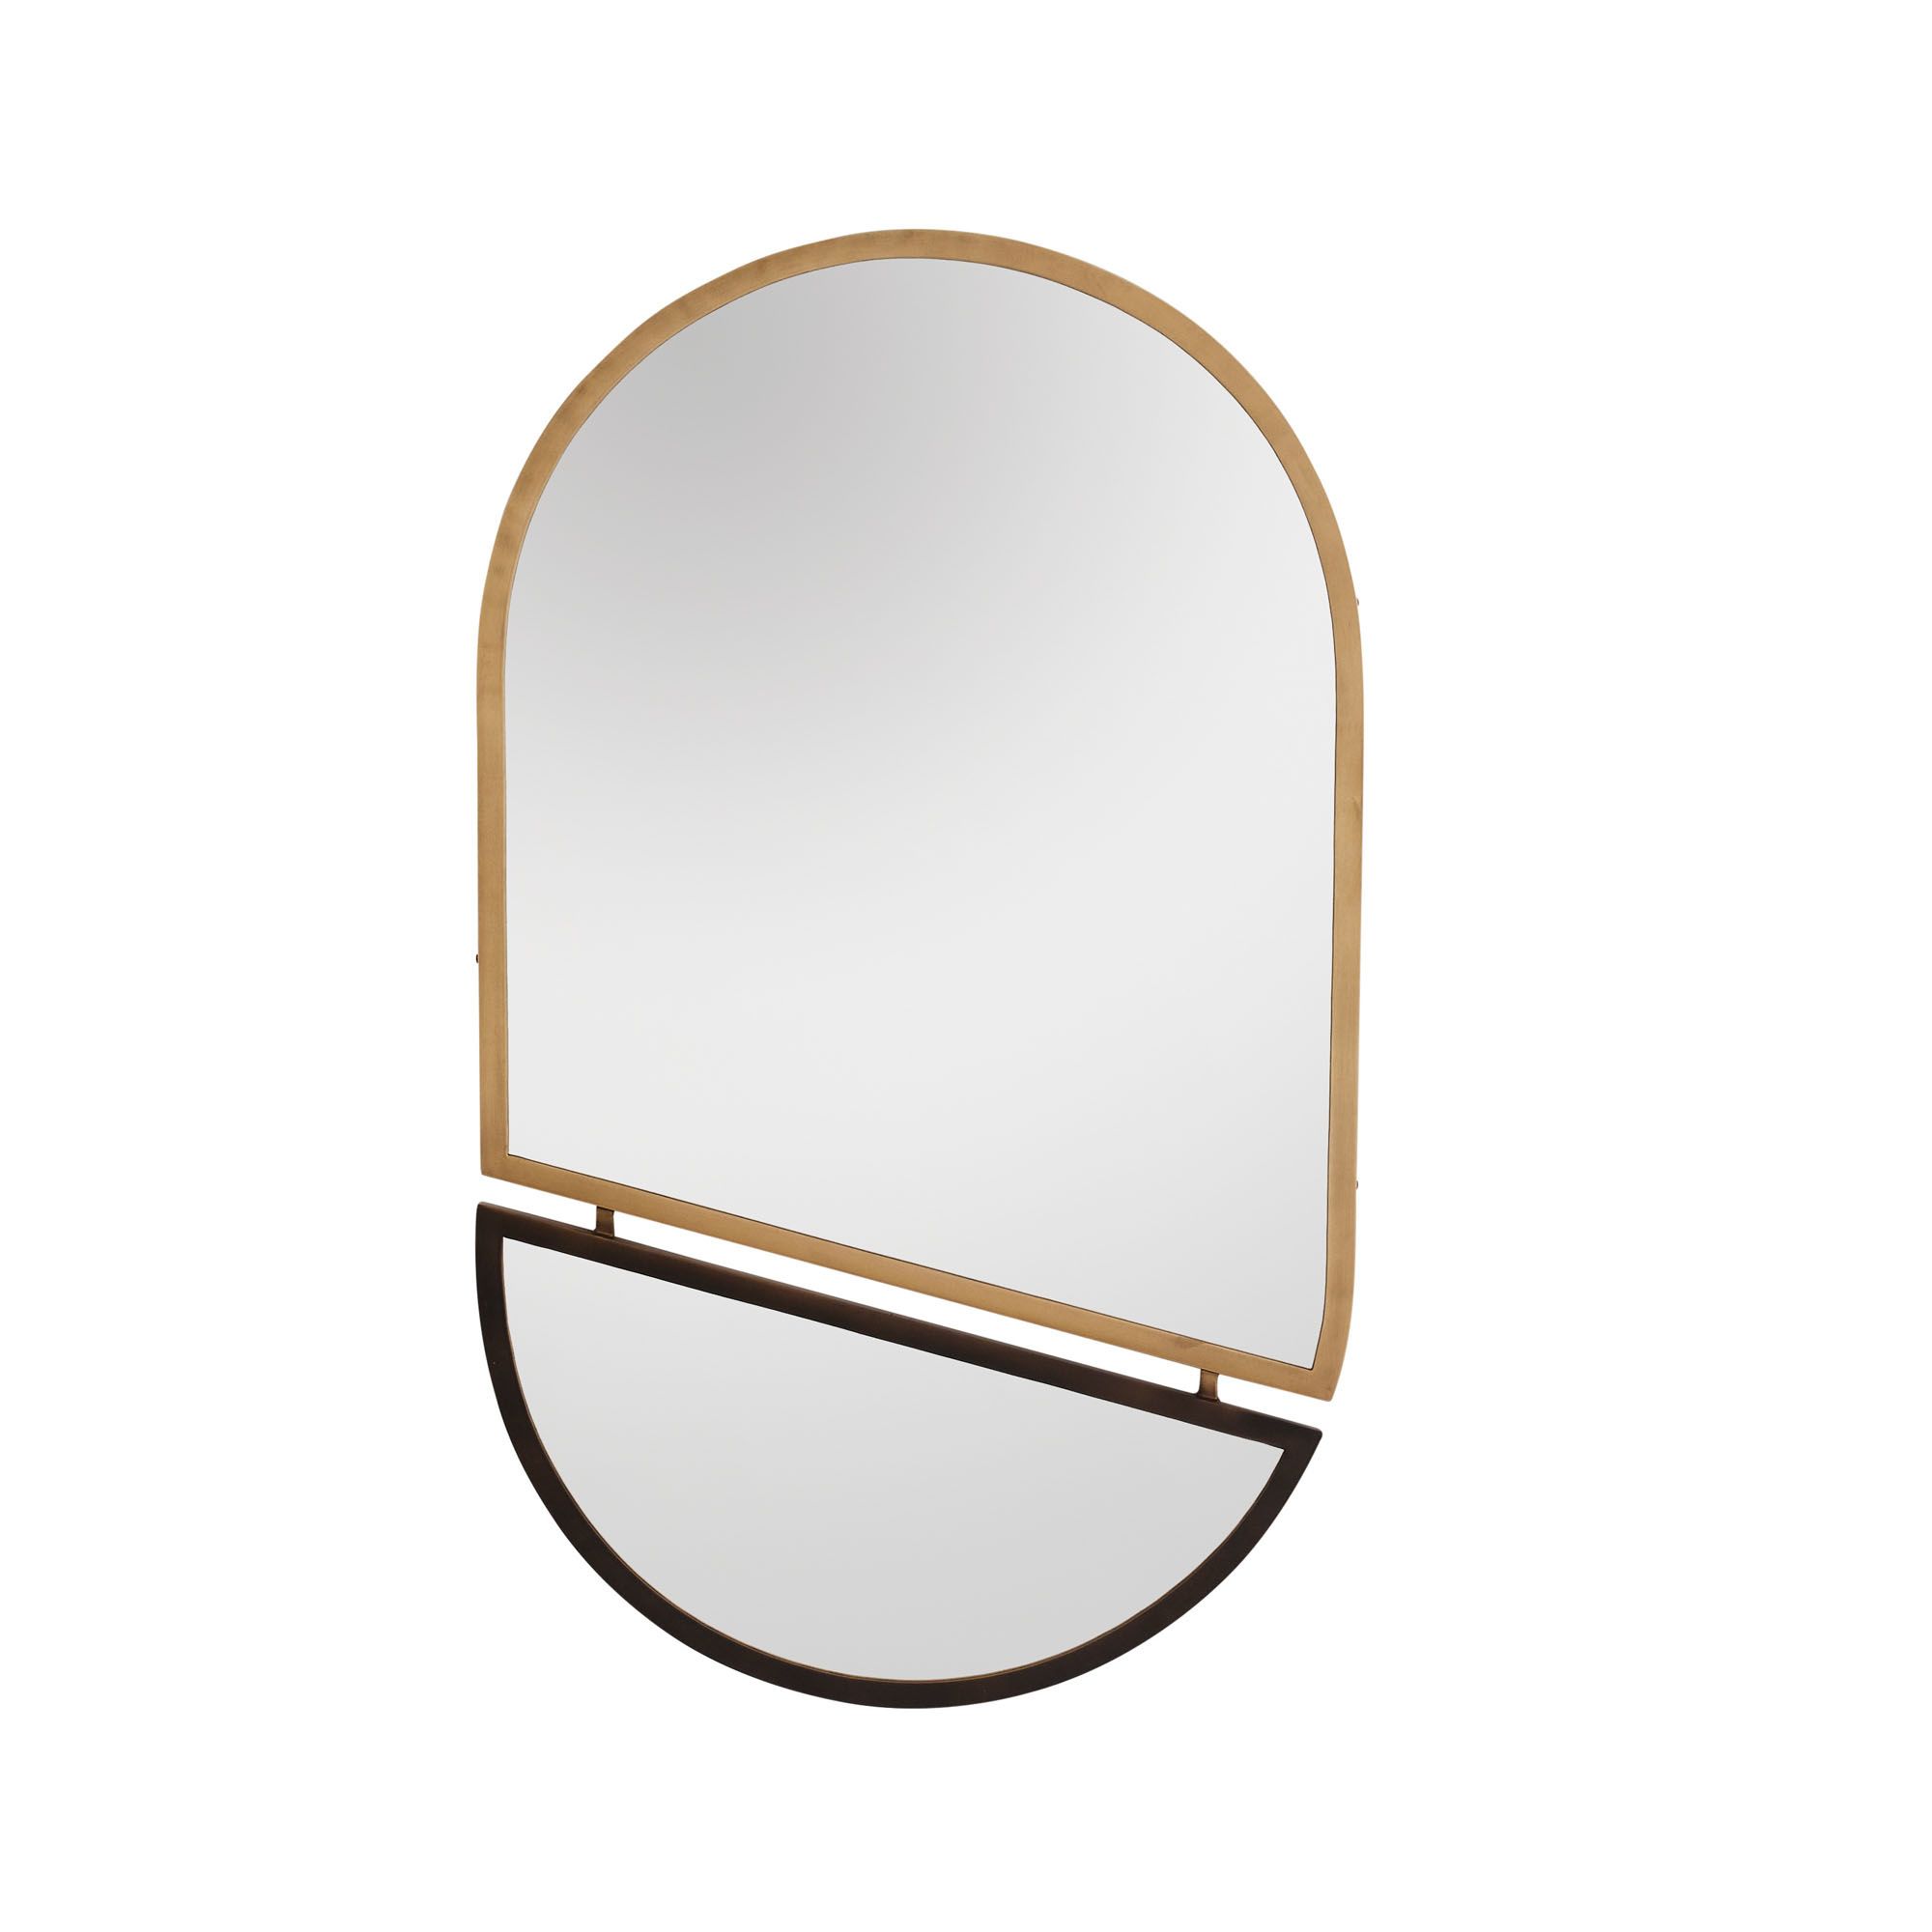 Купить Настенное зеркало Massimo Mirror в интернет-магазине roooms.ru